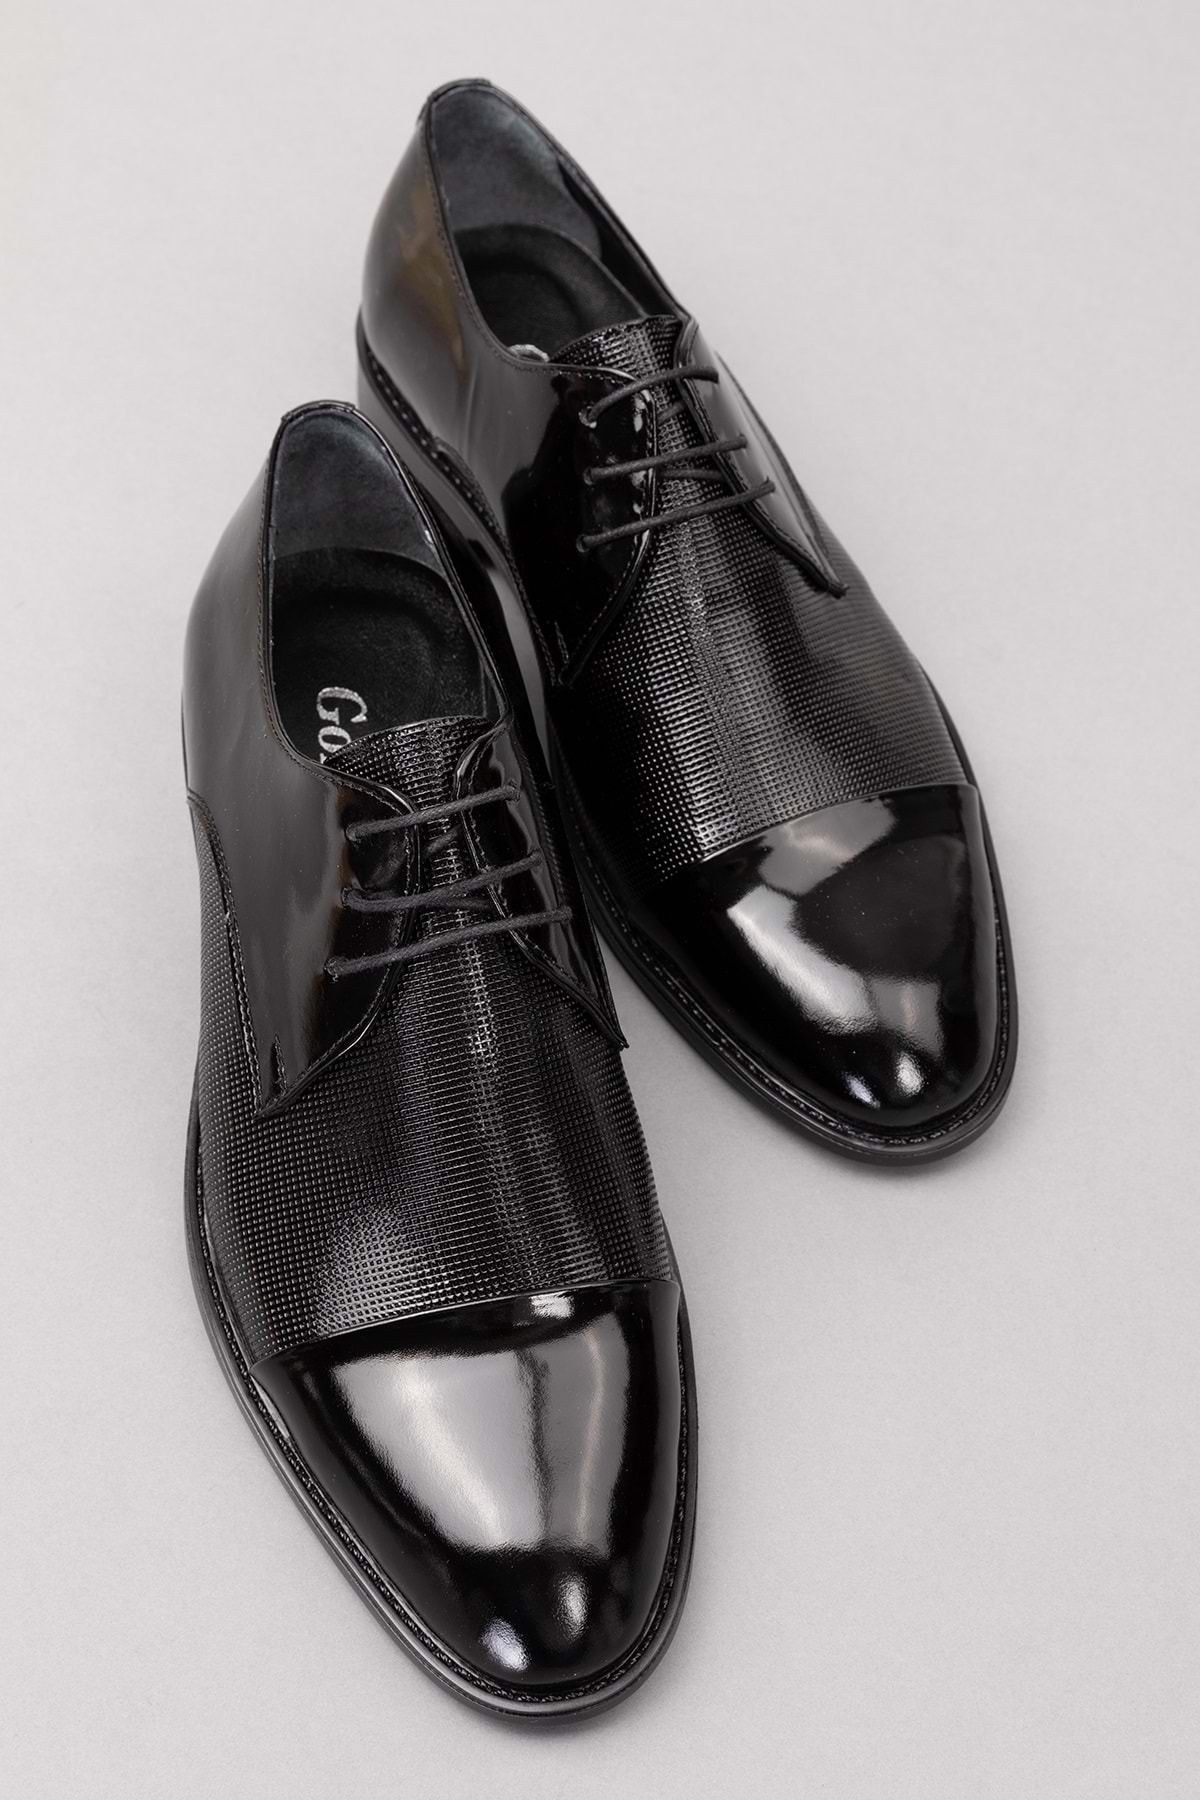 Gondol Erkek Hakiki Deri Klasik Damat Ayakkabı pş.75 - siyah rugan - 43